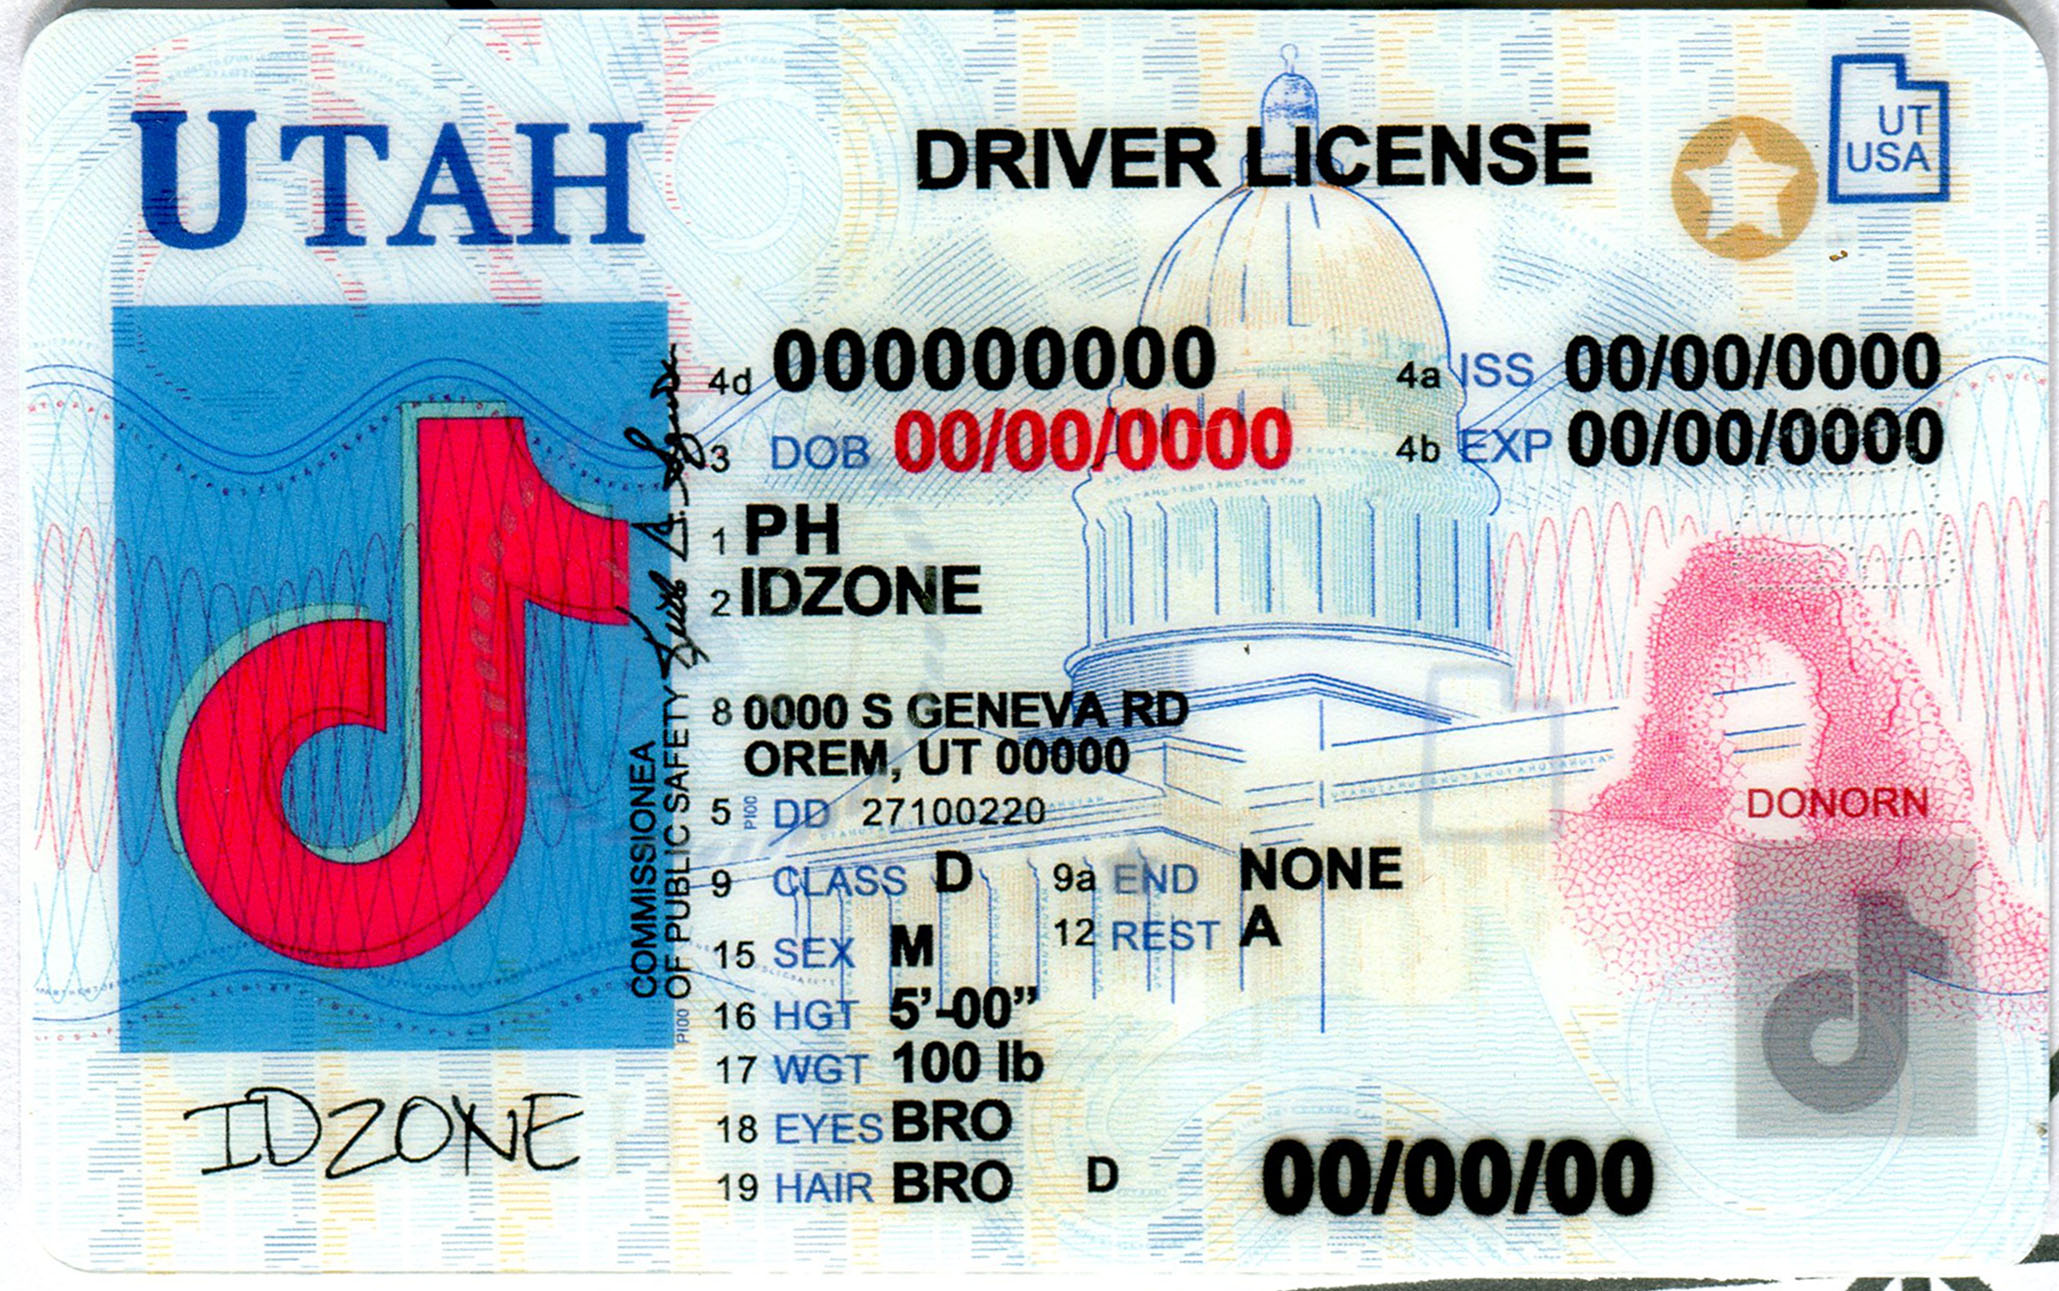 UTAH-New Scannable fake id